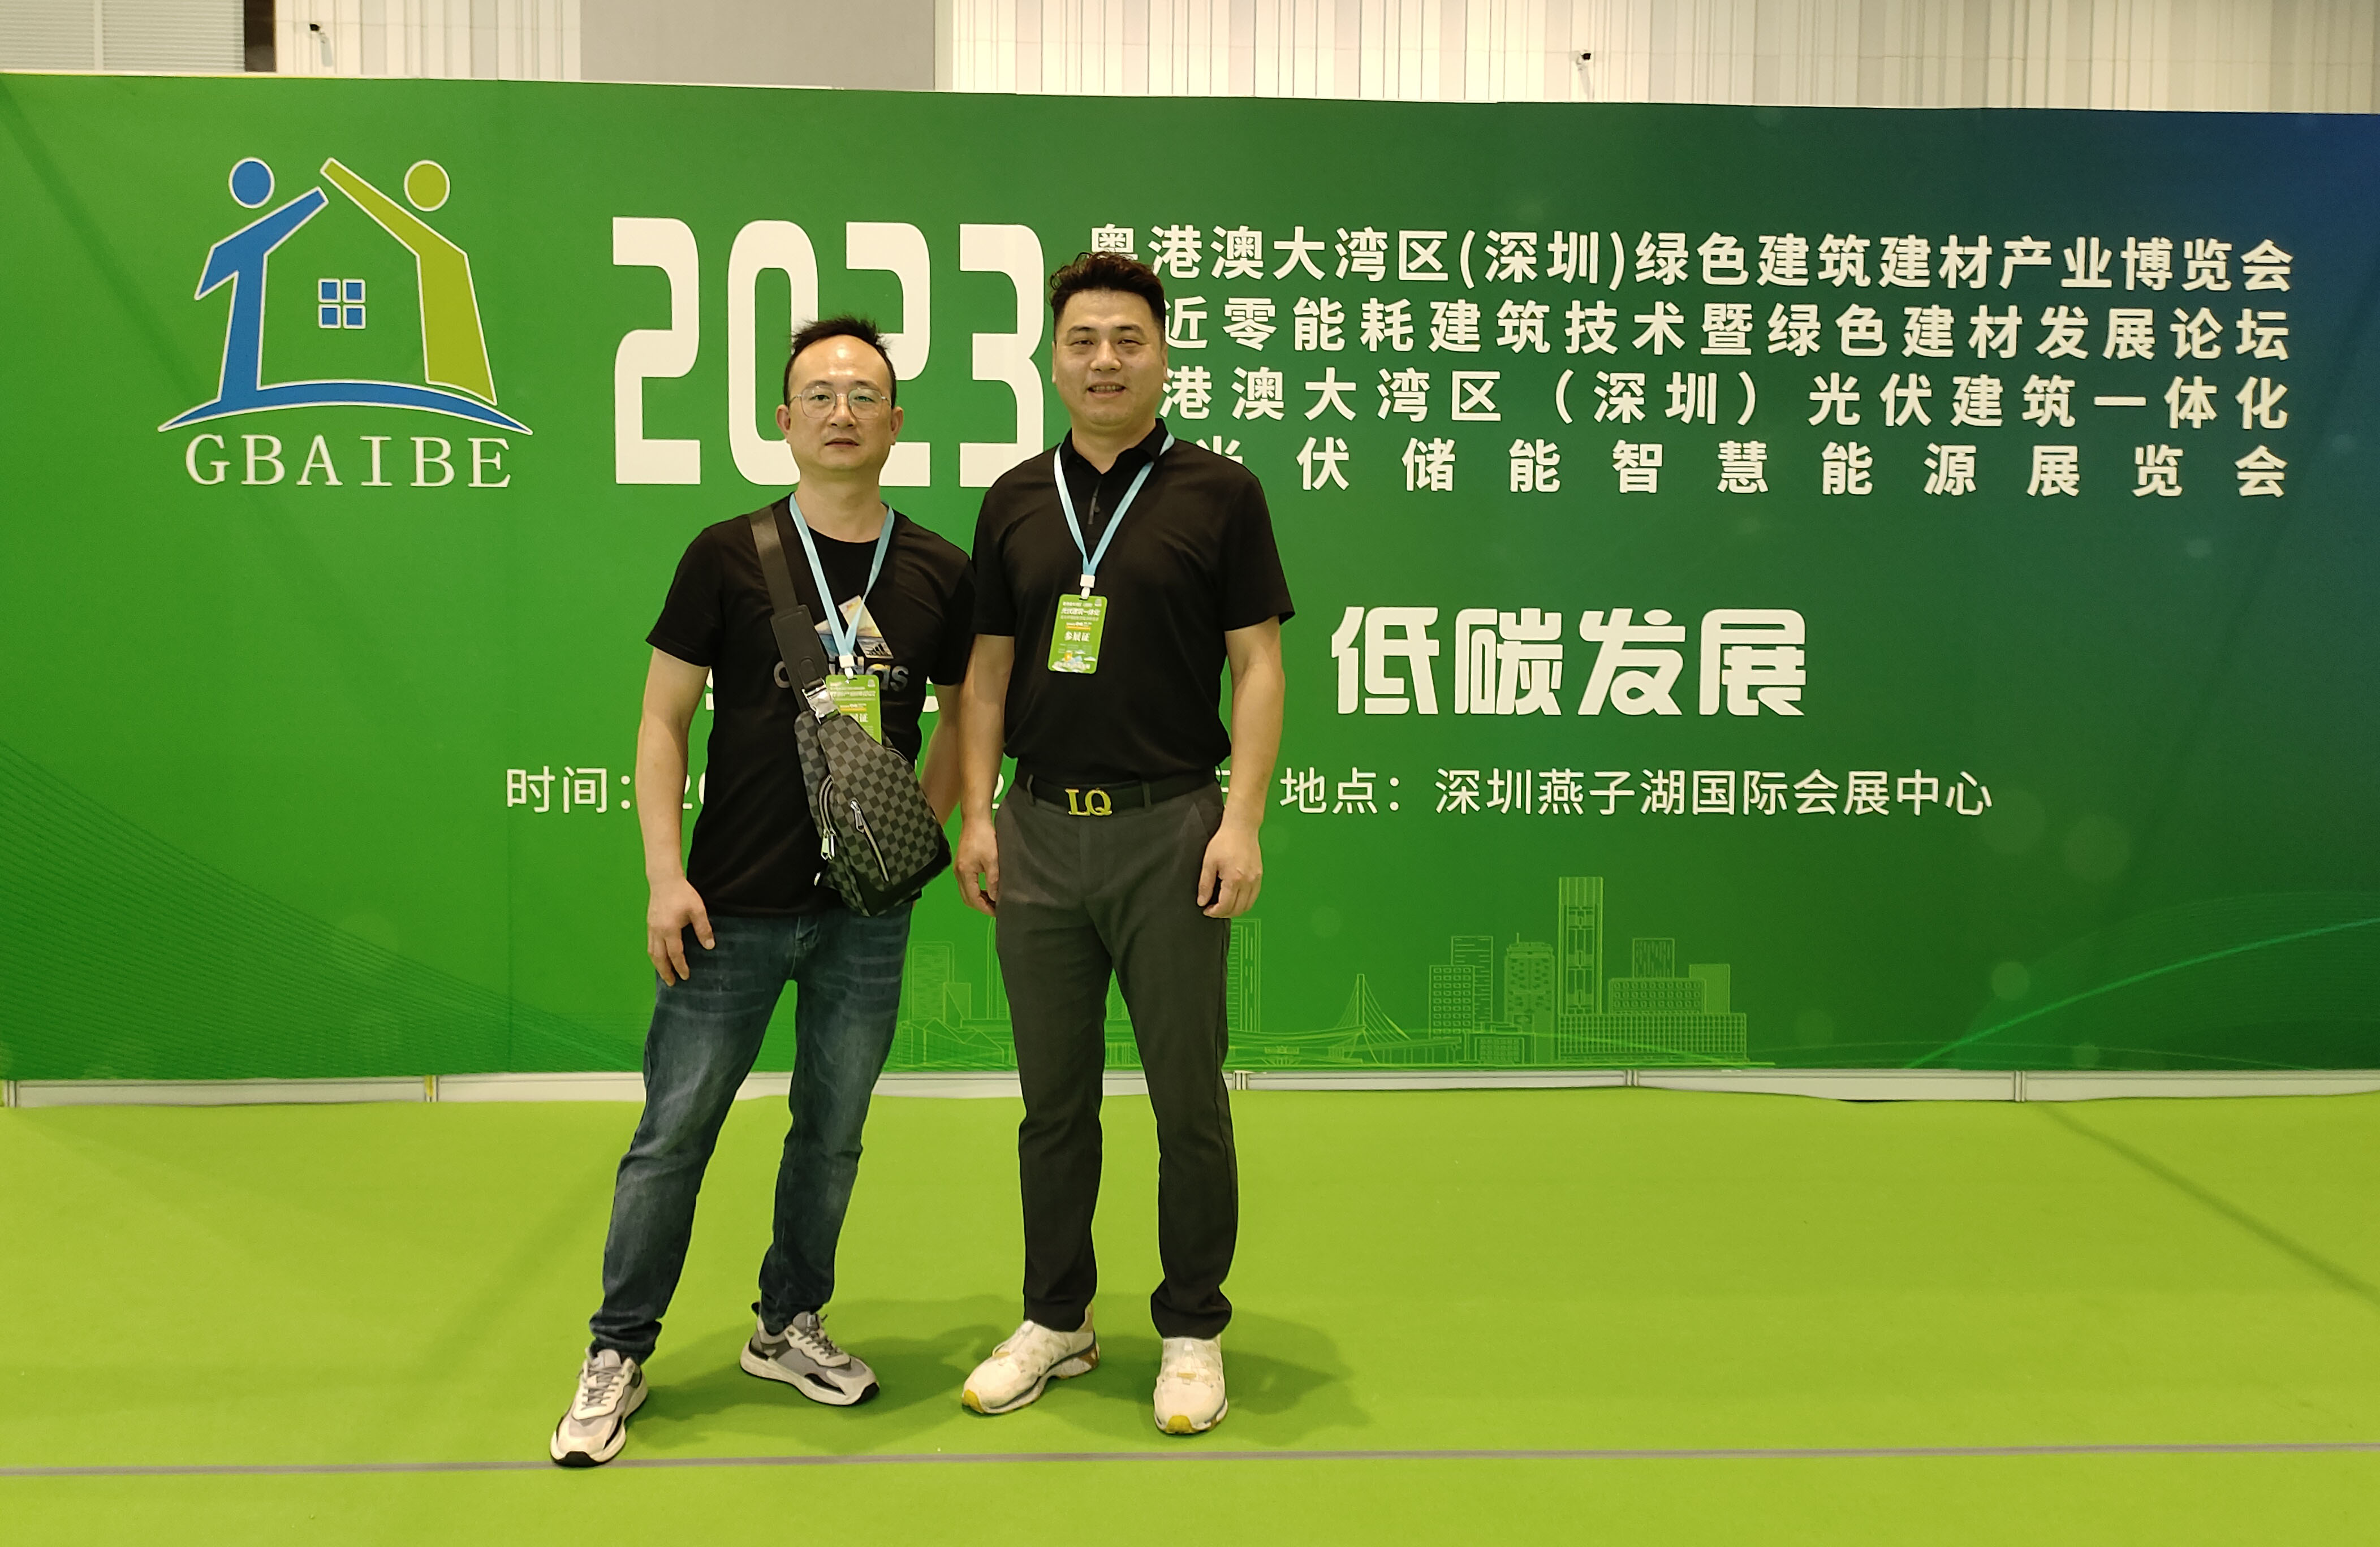 Longqi New Energy berpartisipasi dalam Pameran Integrasi Gedung Fotovoltaik dan Pameran Energi Cerdas Penyimpanan Energi Fotovoltaik